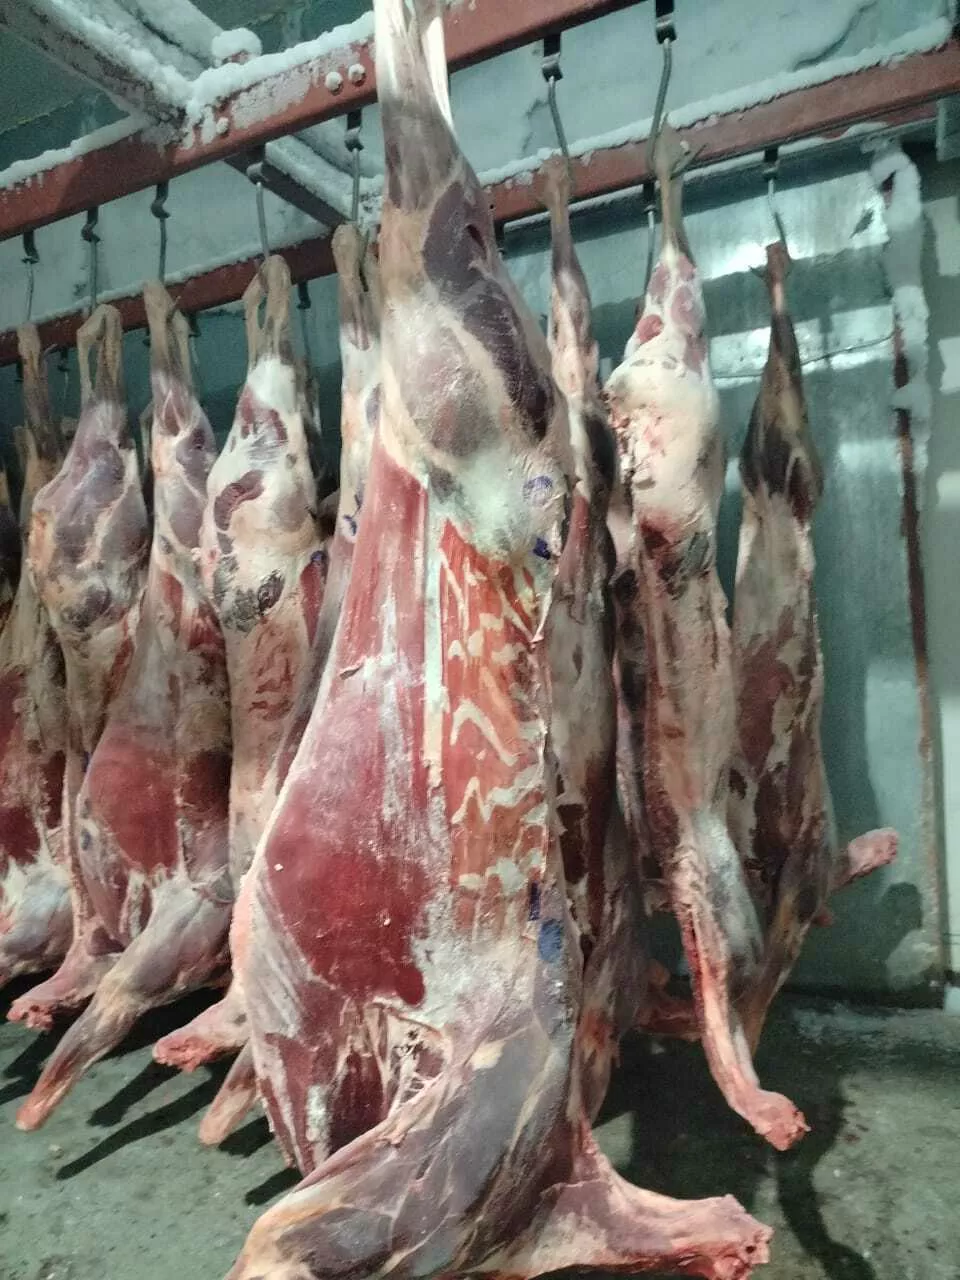 мясо марала в полутушах мороженное в Барнауле и Алтайском крае